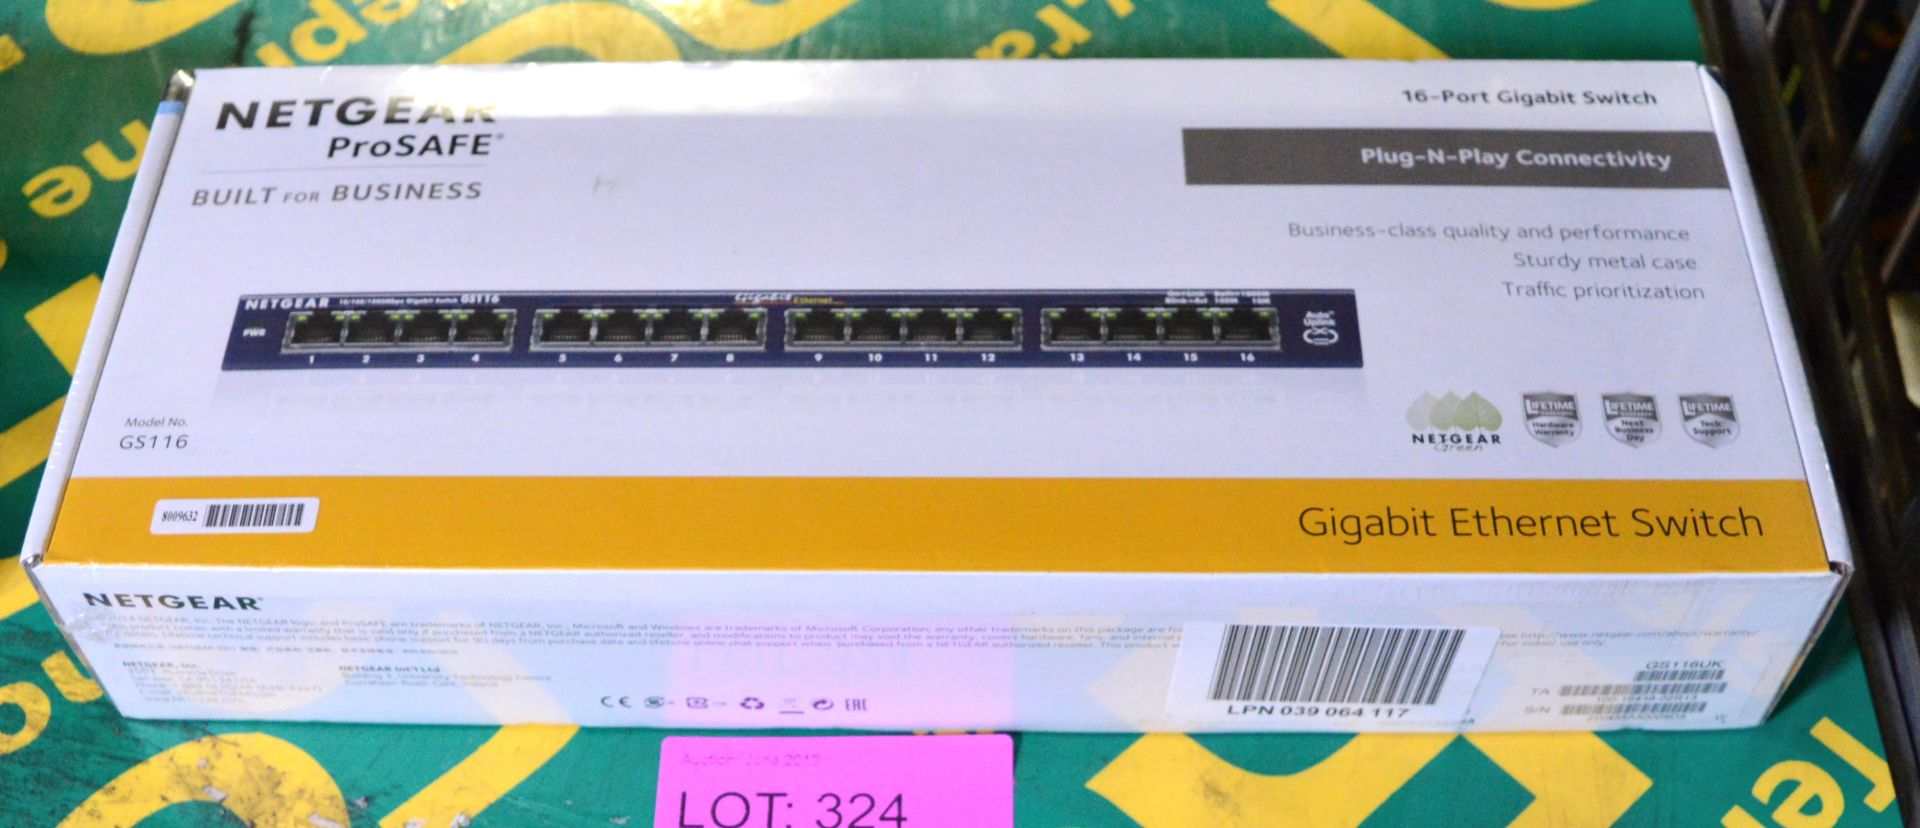 Netgear ProSAFE 16-Port Ethernet Switch.